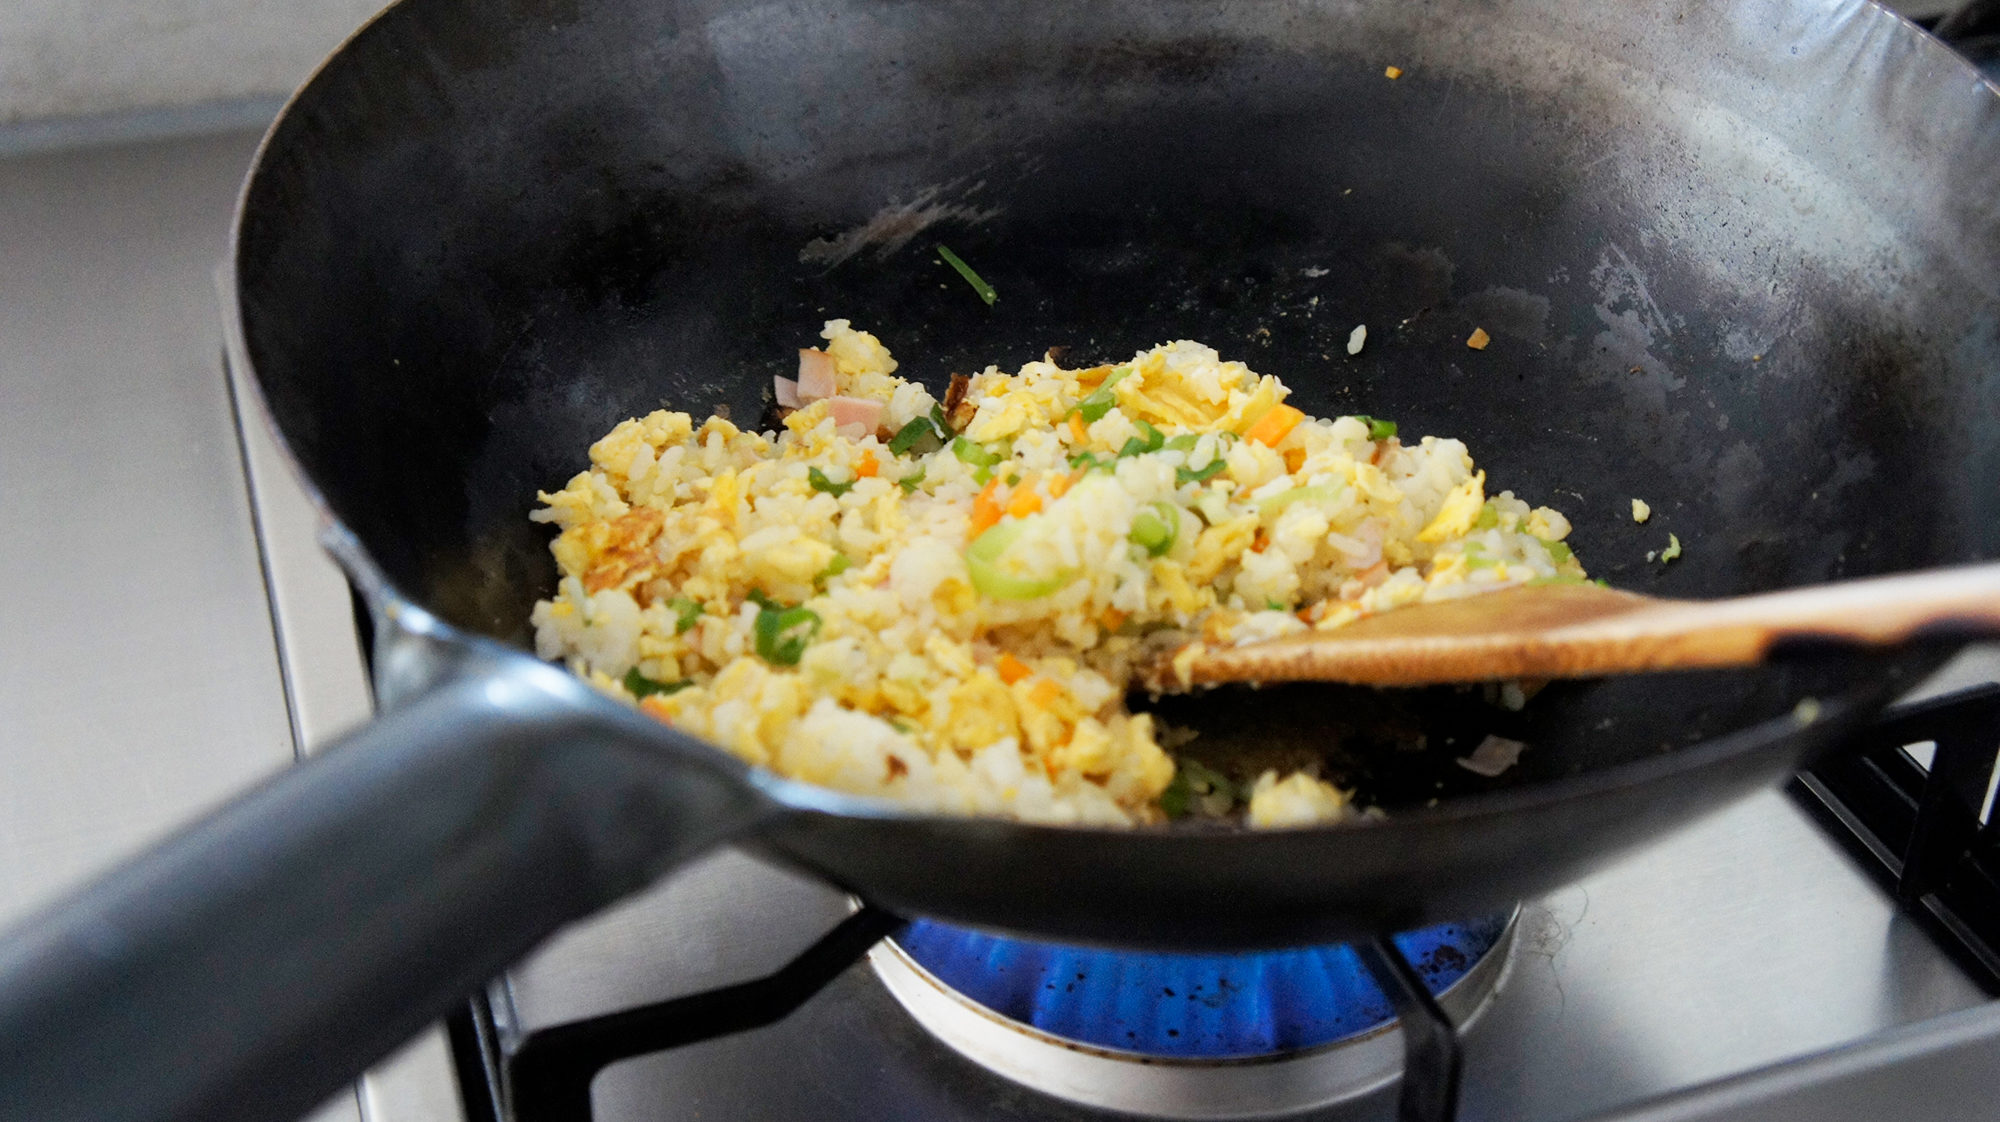 炒め物や焼き飯だけでなく、蒸し物なども調理可能。鍋底のカーブが深いため、具材がこぼれにくいことも魅力の一つなんです。